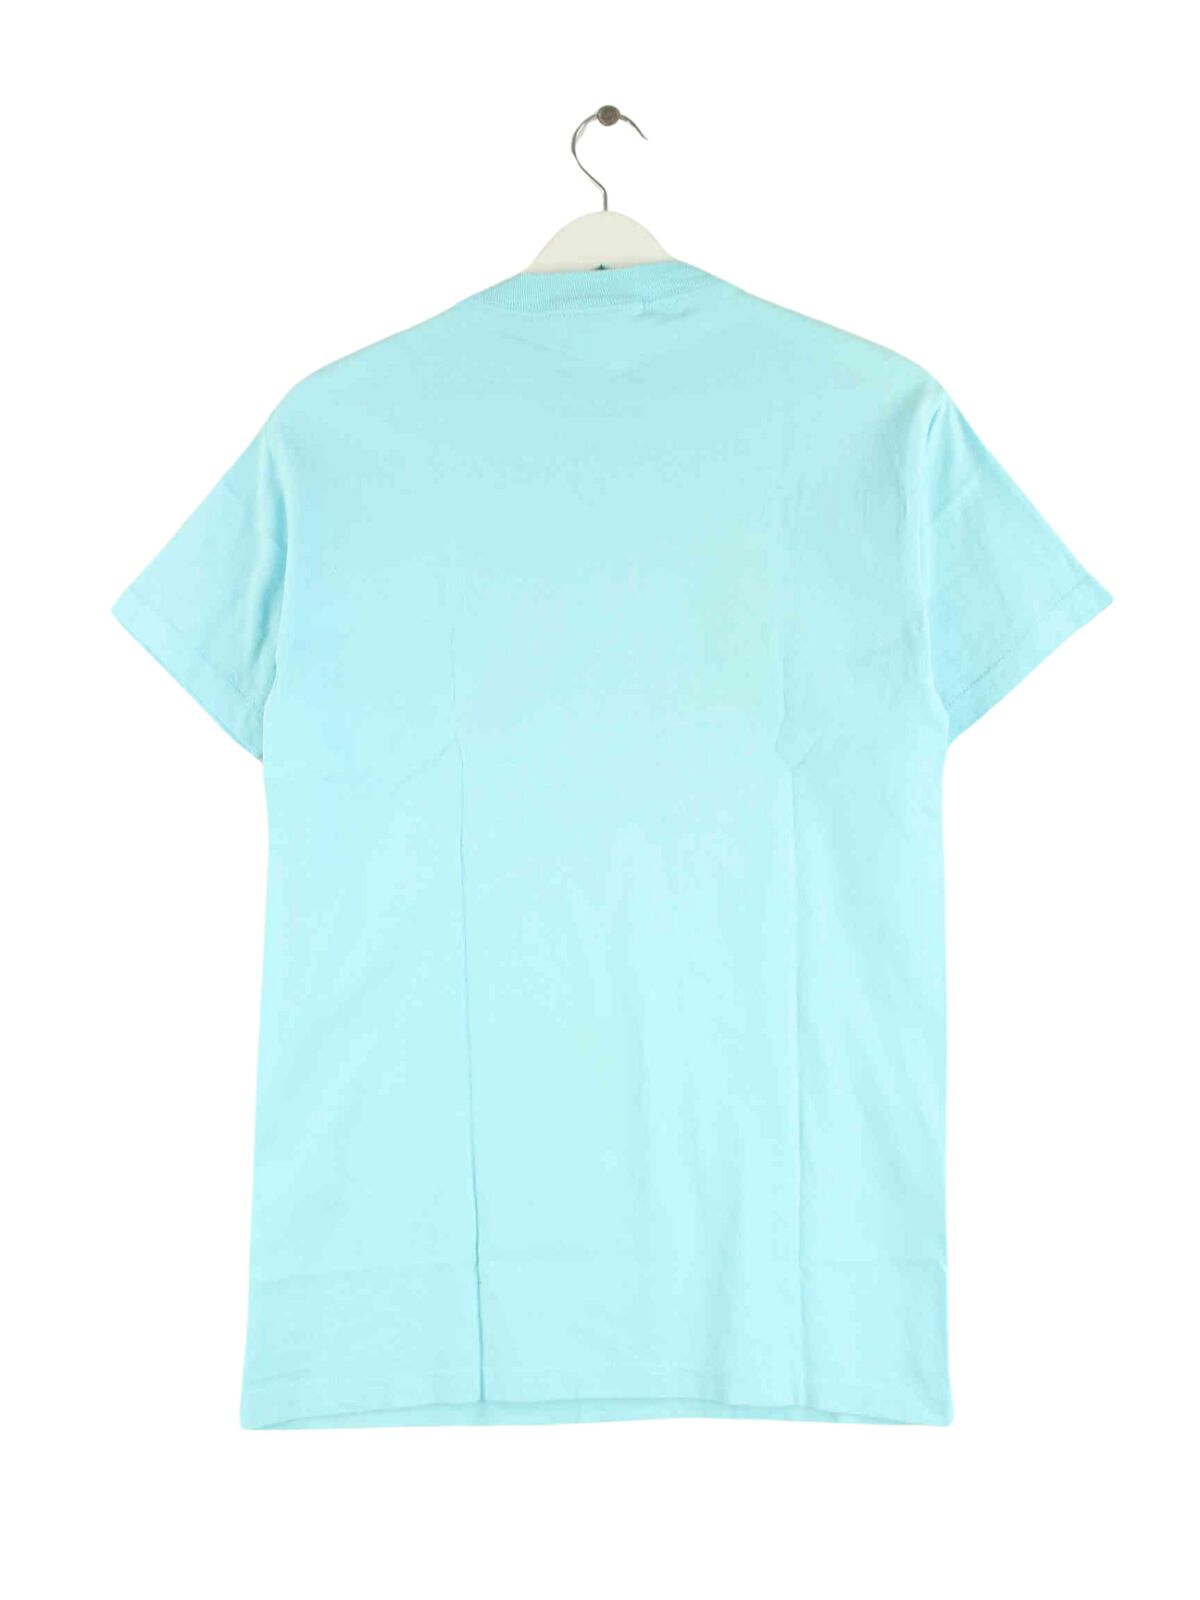 Guess 1992 Print Single Stitch T-Shirt Blau M (back image)